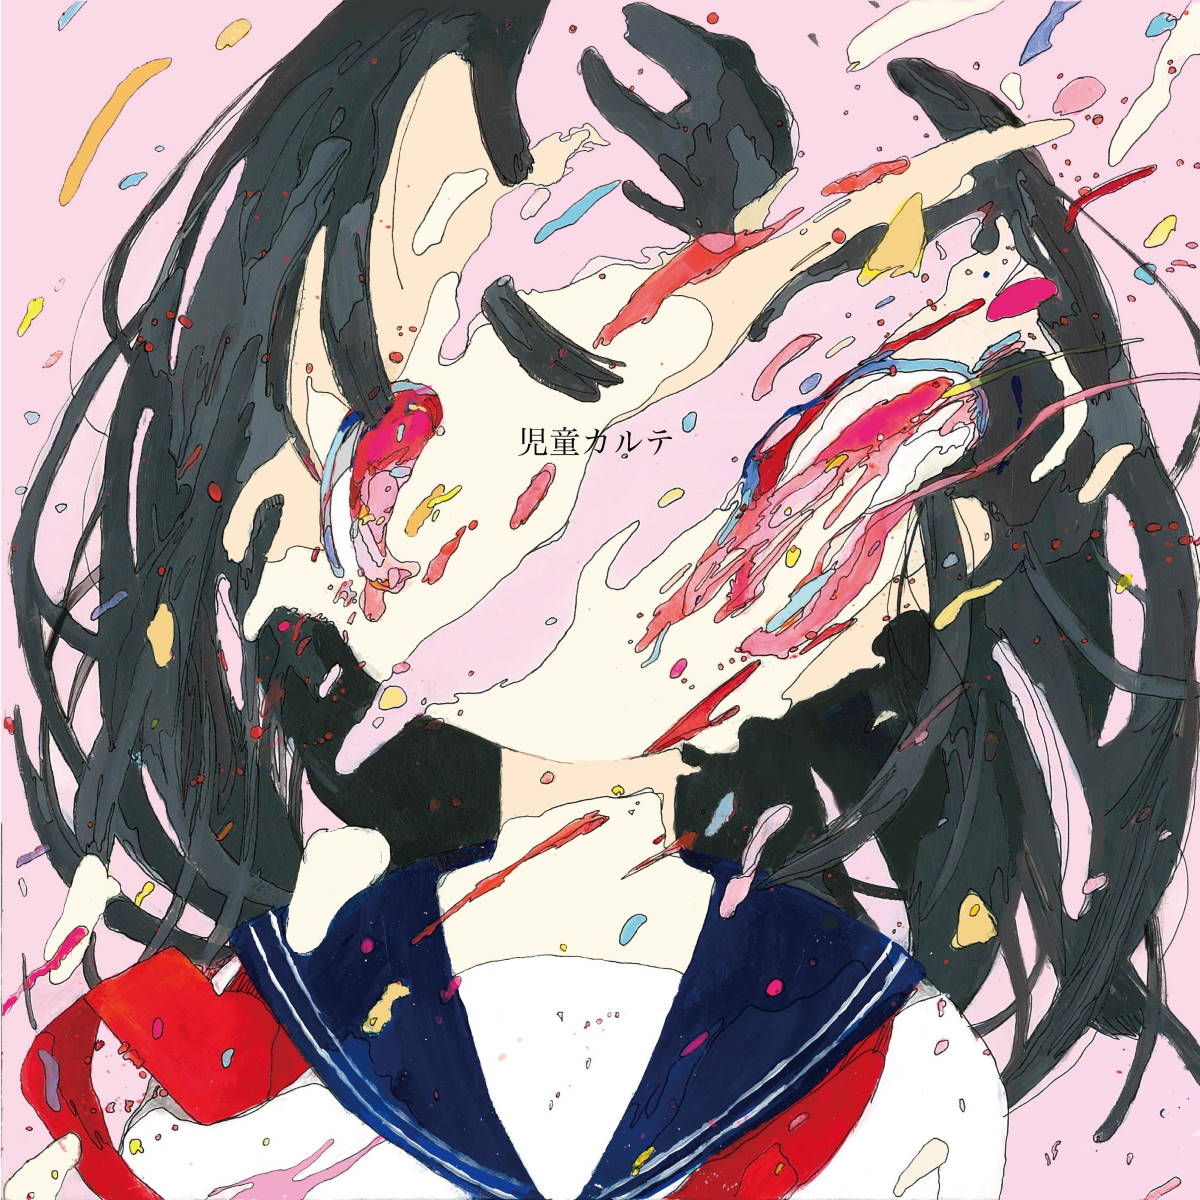 Cover art for『Shinsei Kamattechan - ゲーム実況してる女の子』from the release『Jidou Karte